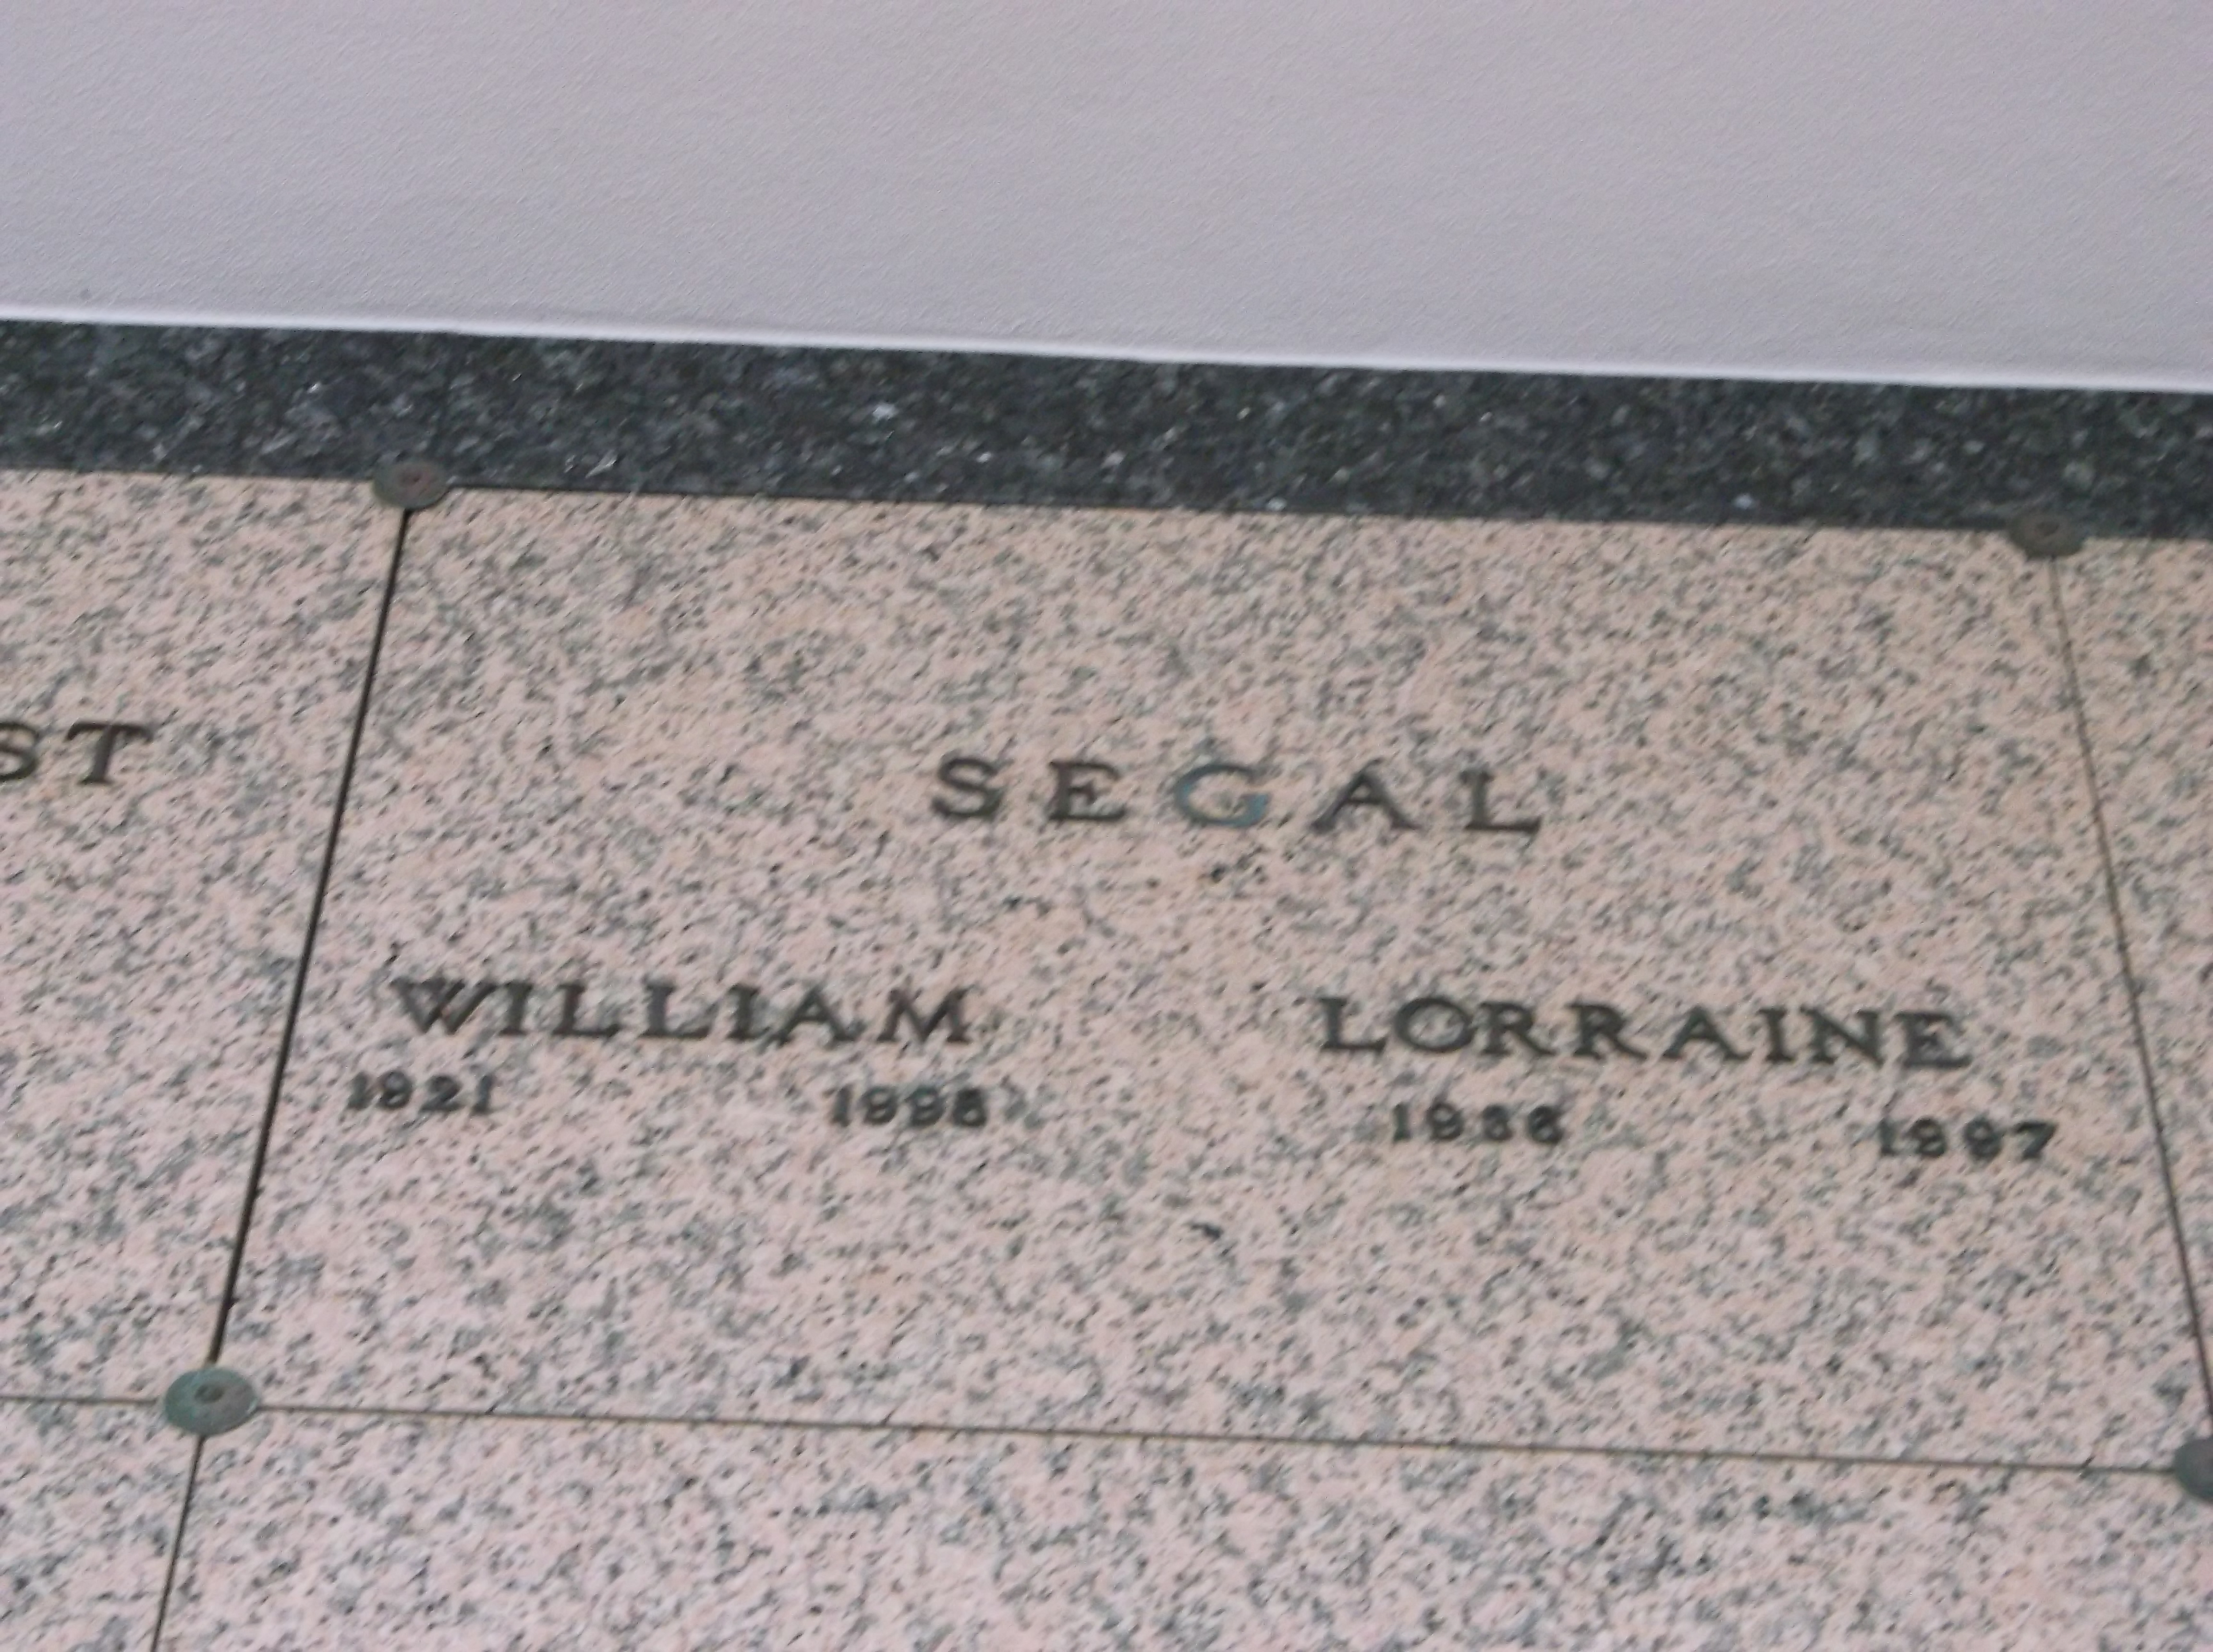 William Segal